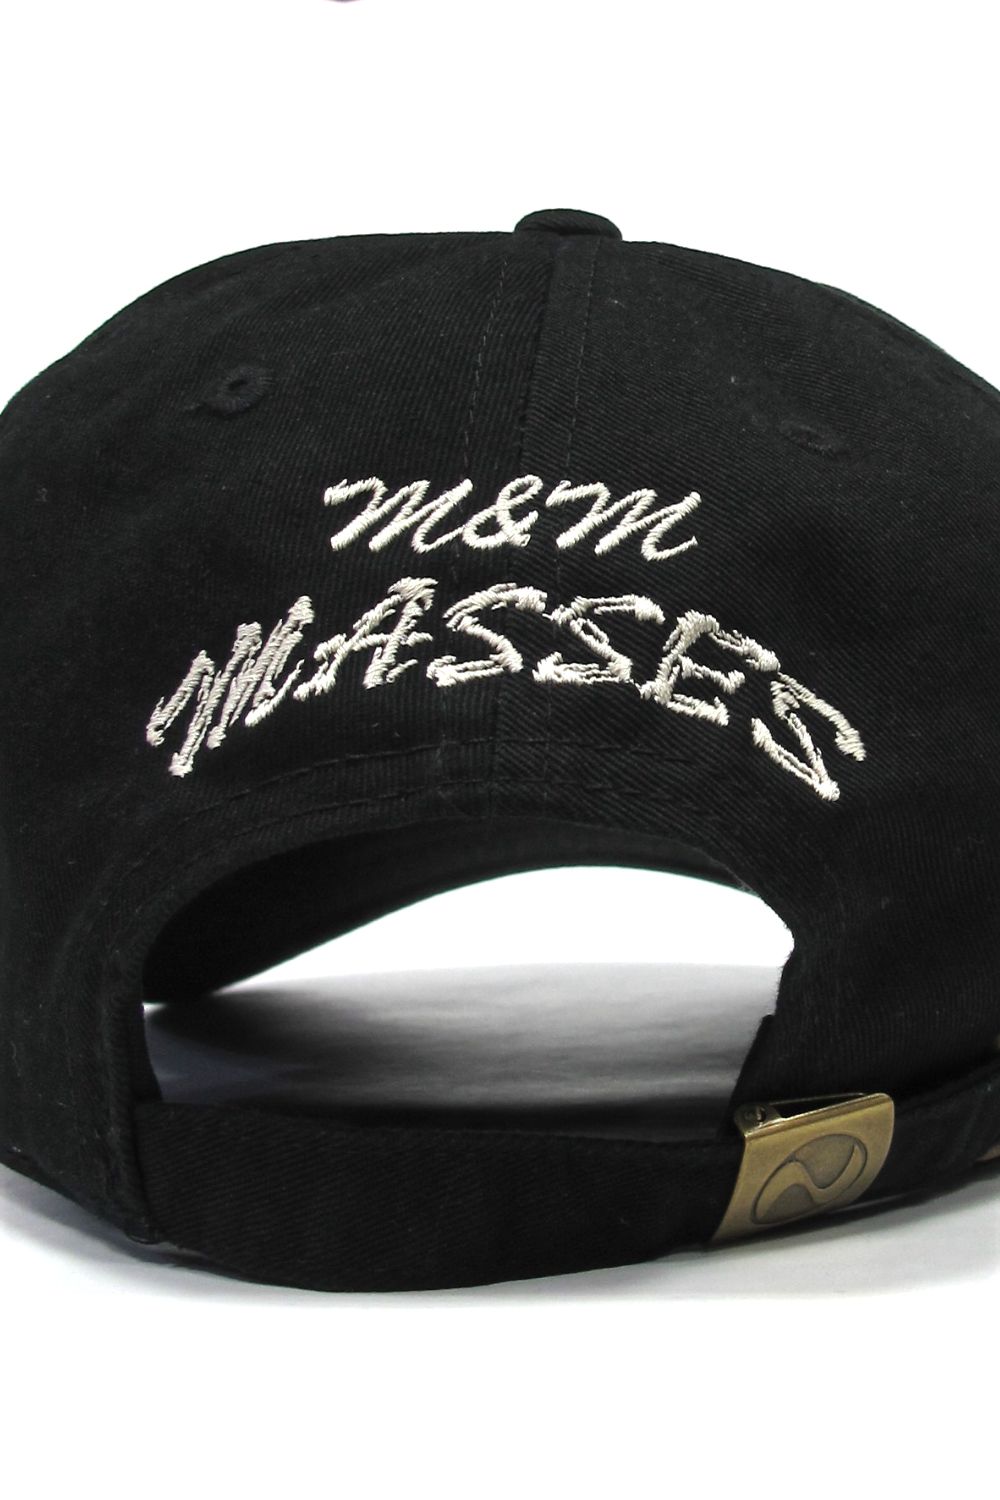 M&M CUSTOM PERFORMANCE - COTTON CAP (×MASSES) (BLACK) / マシス 